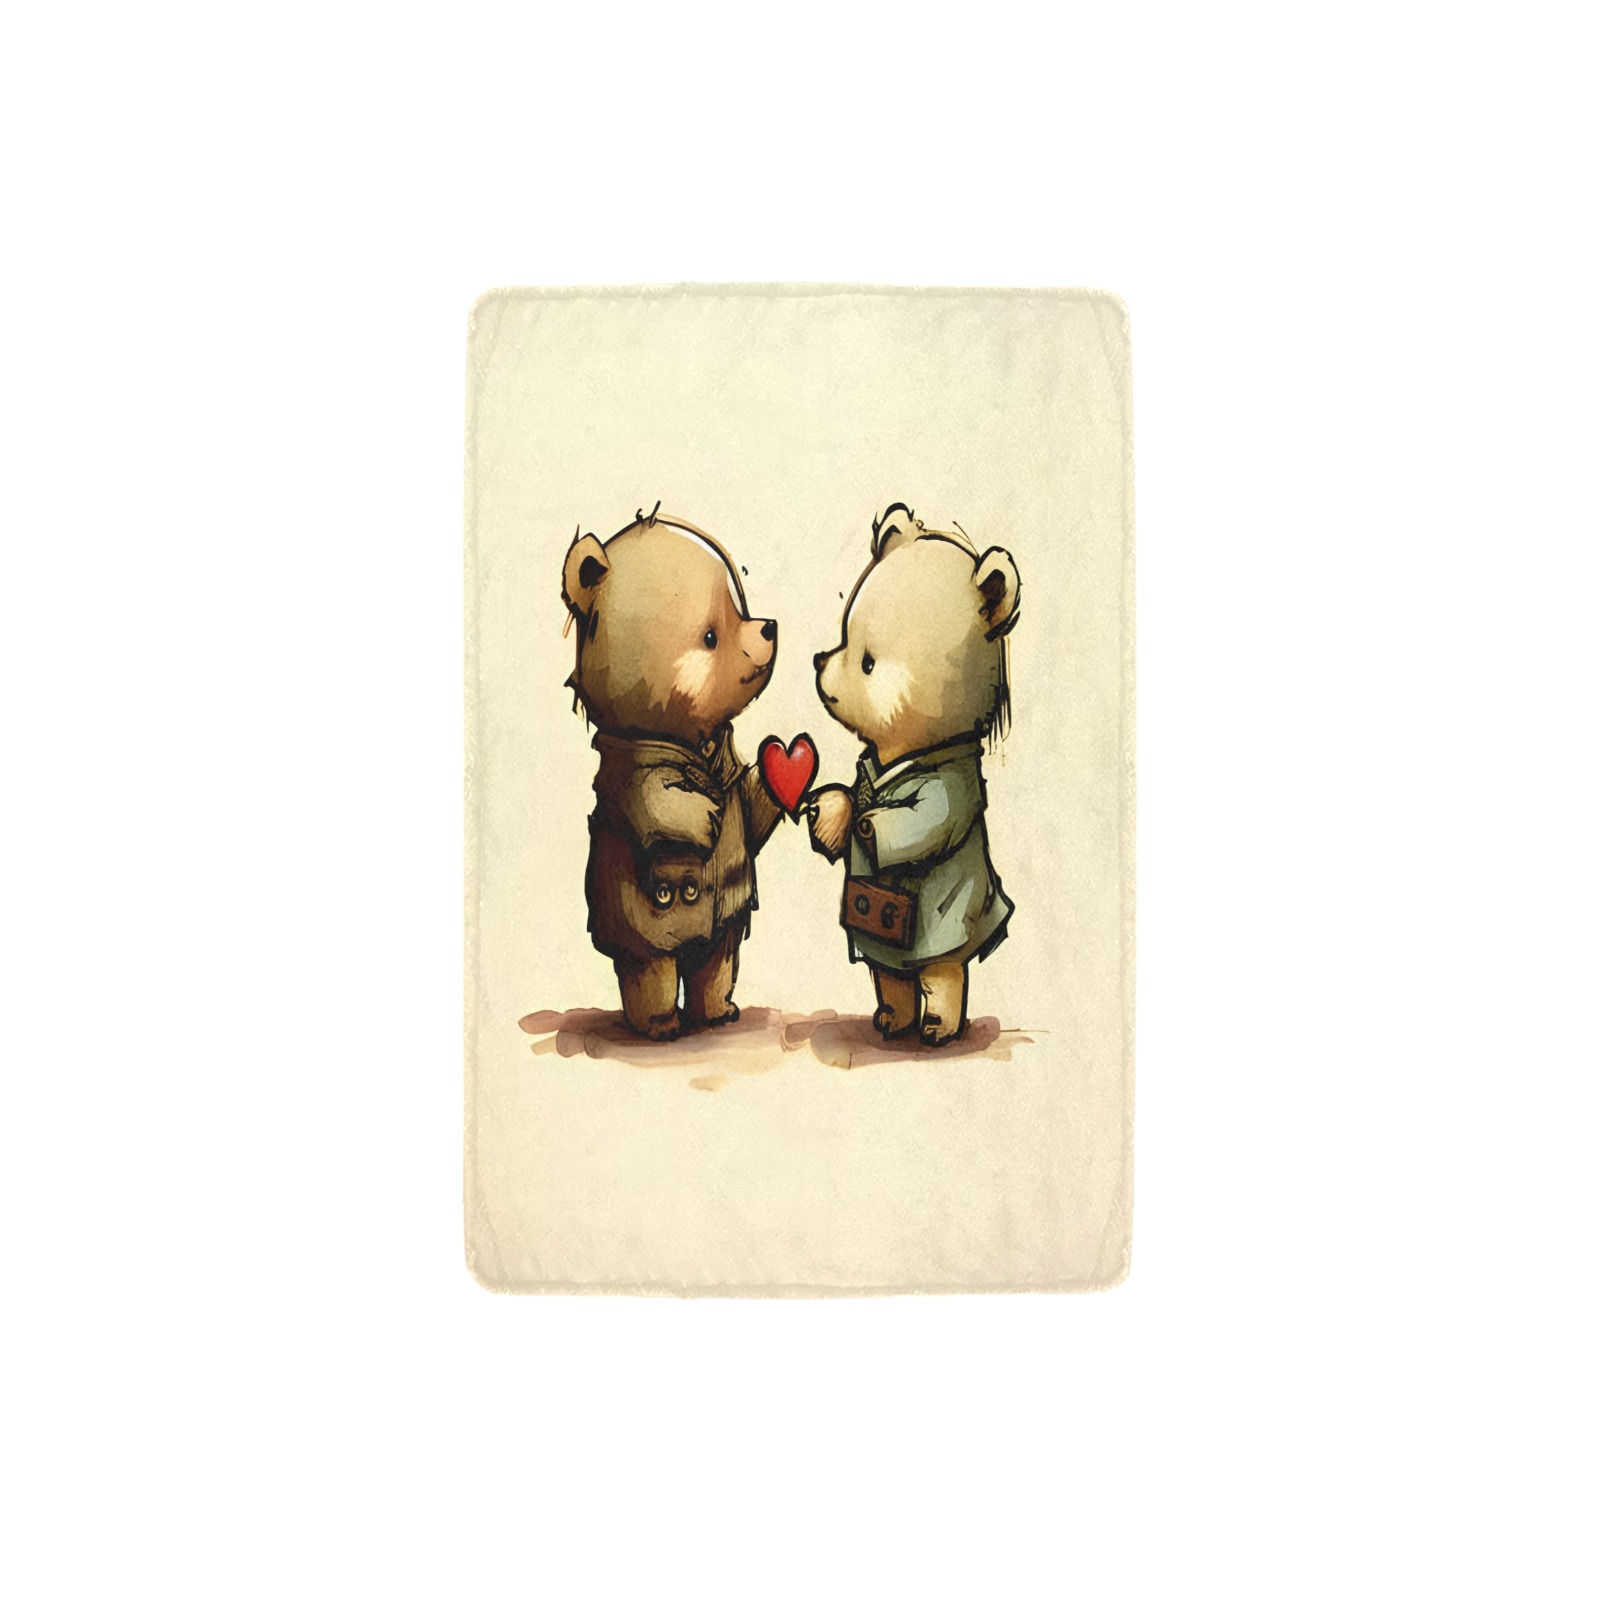 Little Bears 3 Ultra-Soft Micro Fleece Blanket 32"x48"